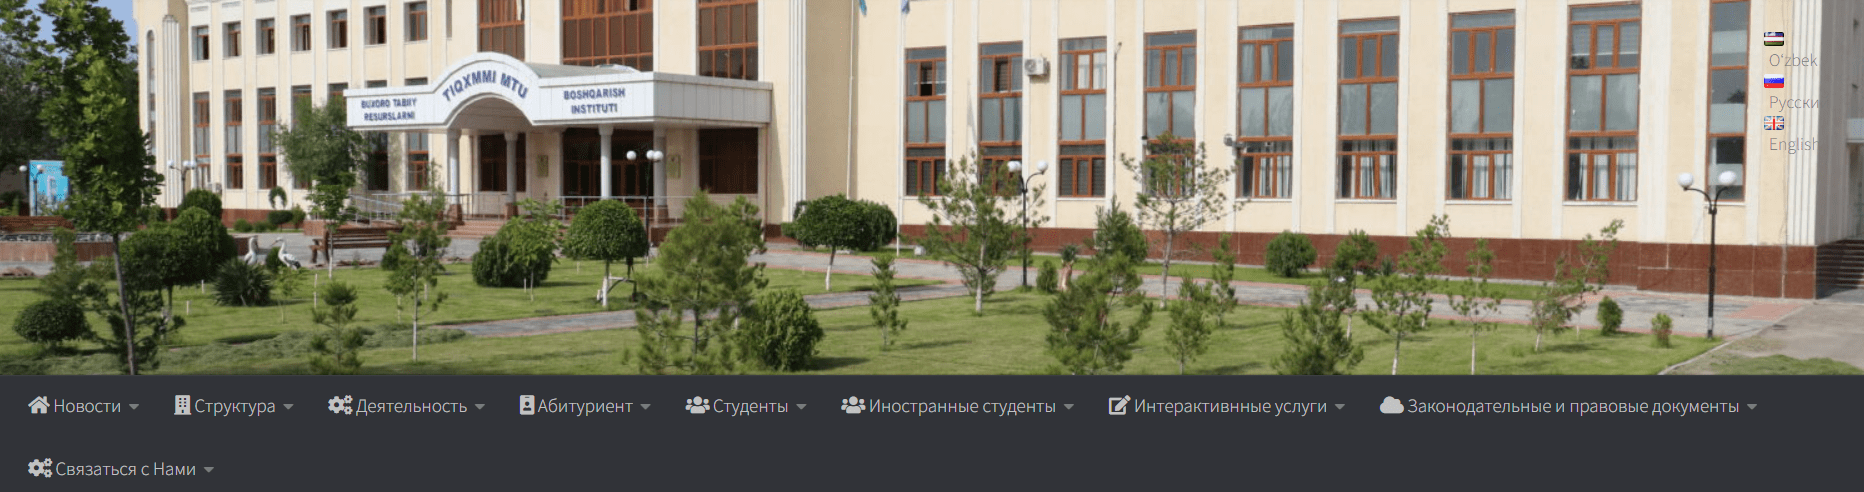 Ташкентский институт ирригации и мелиорации (tiiamebb.uz)